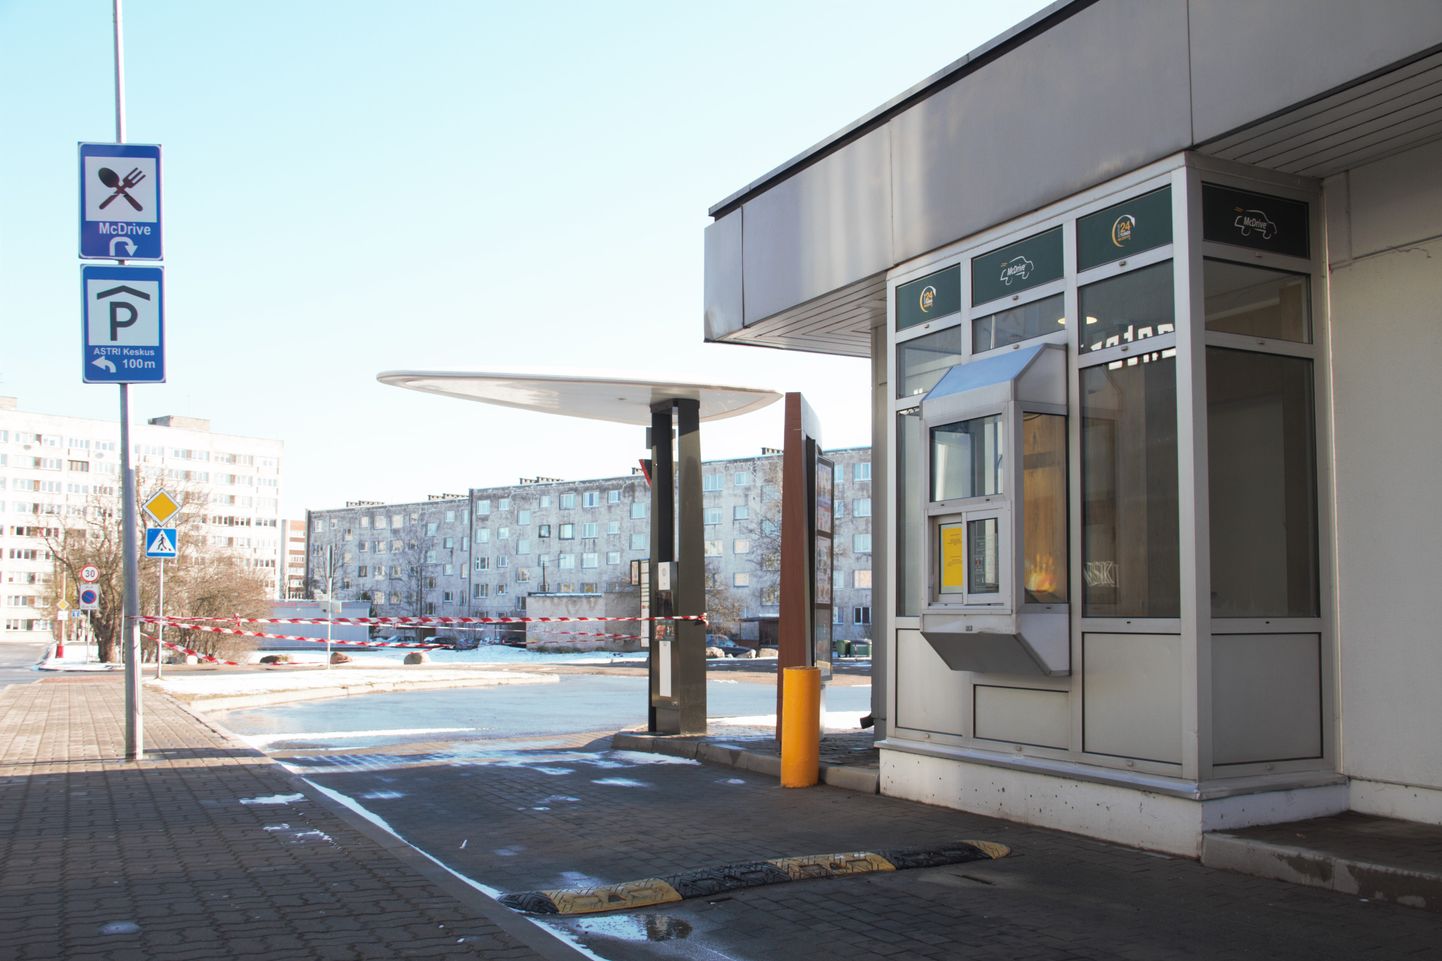 Ресторан McDonalds в Нарве закрыли на карантин после того, как у одного из сотрудников был обнаружен коронавирус.